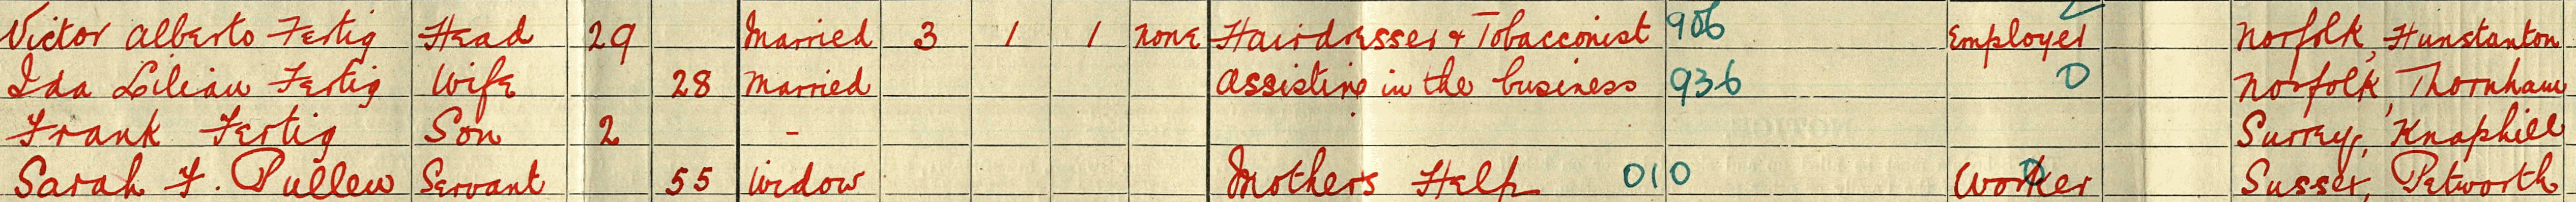 ida helsdon 1911 census